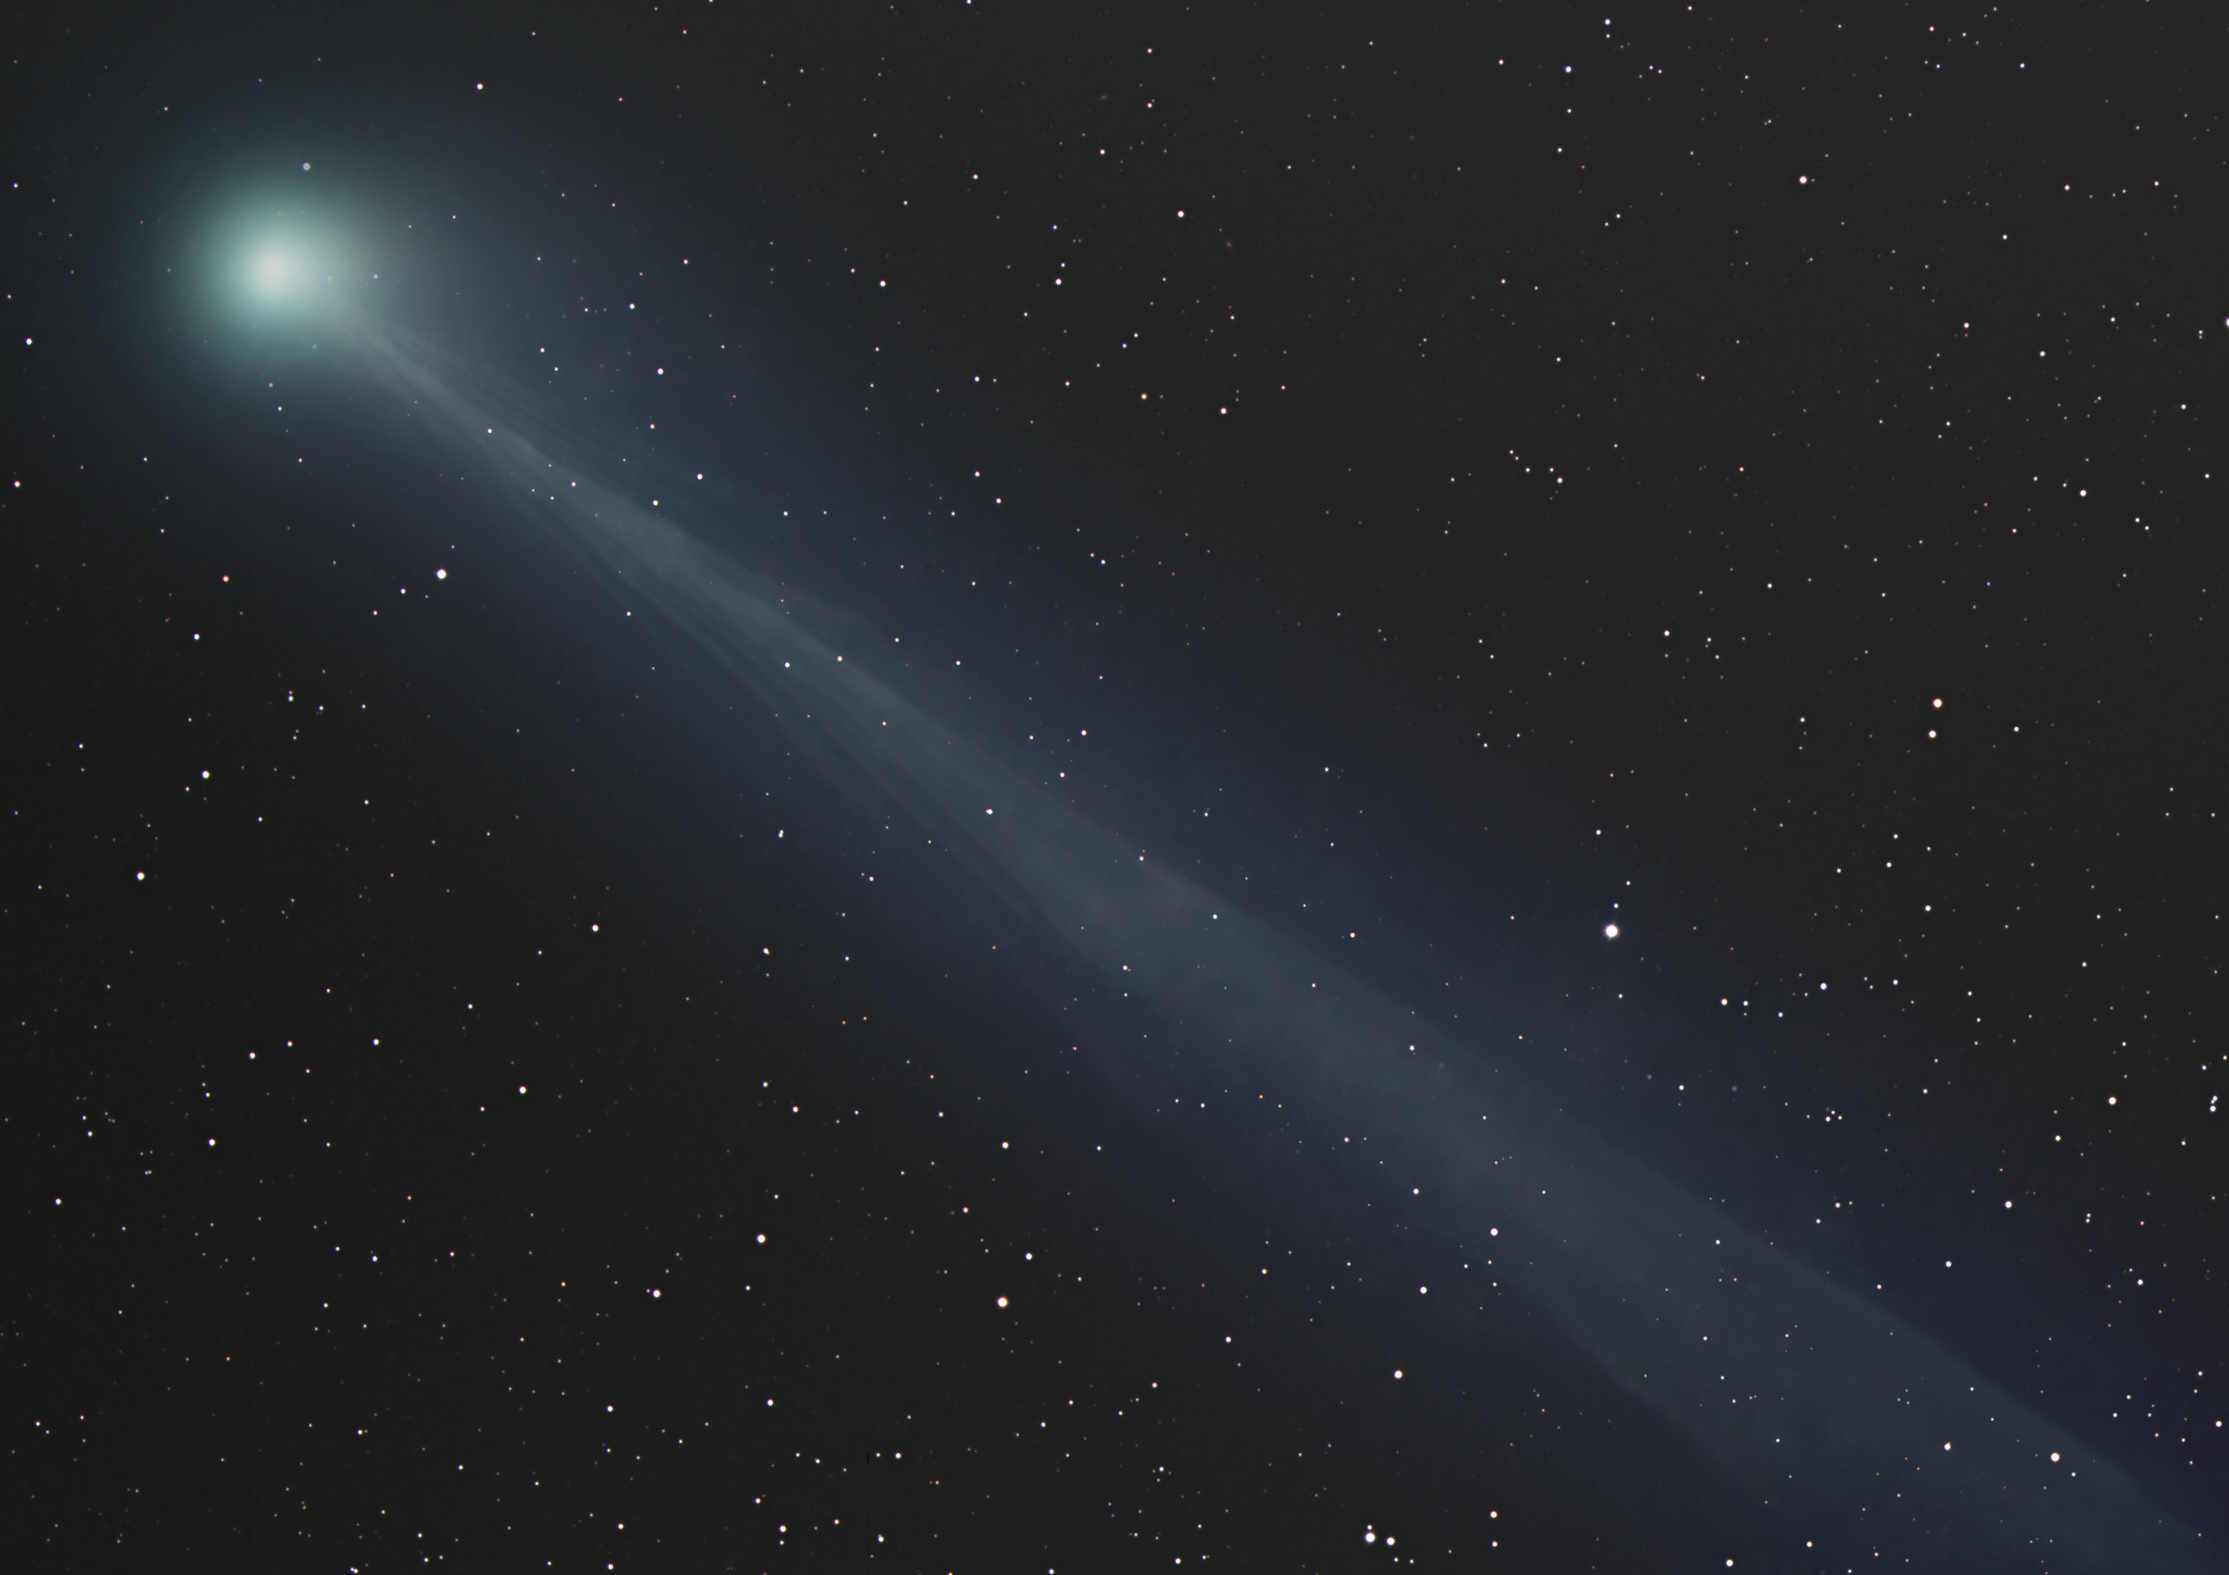 La queue fantomatique de la comète Swan